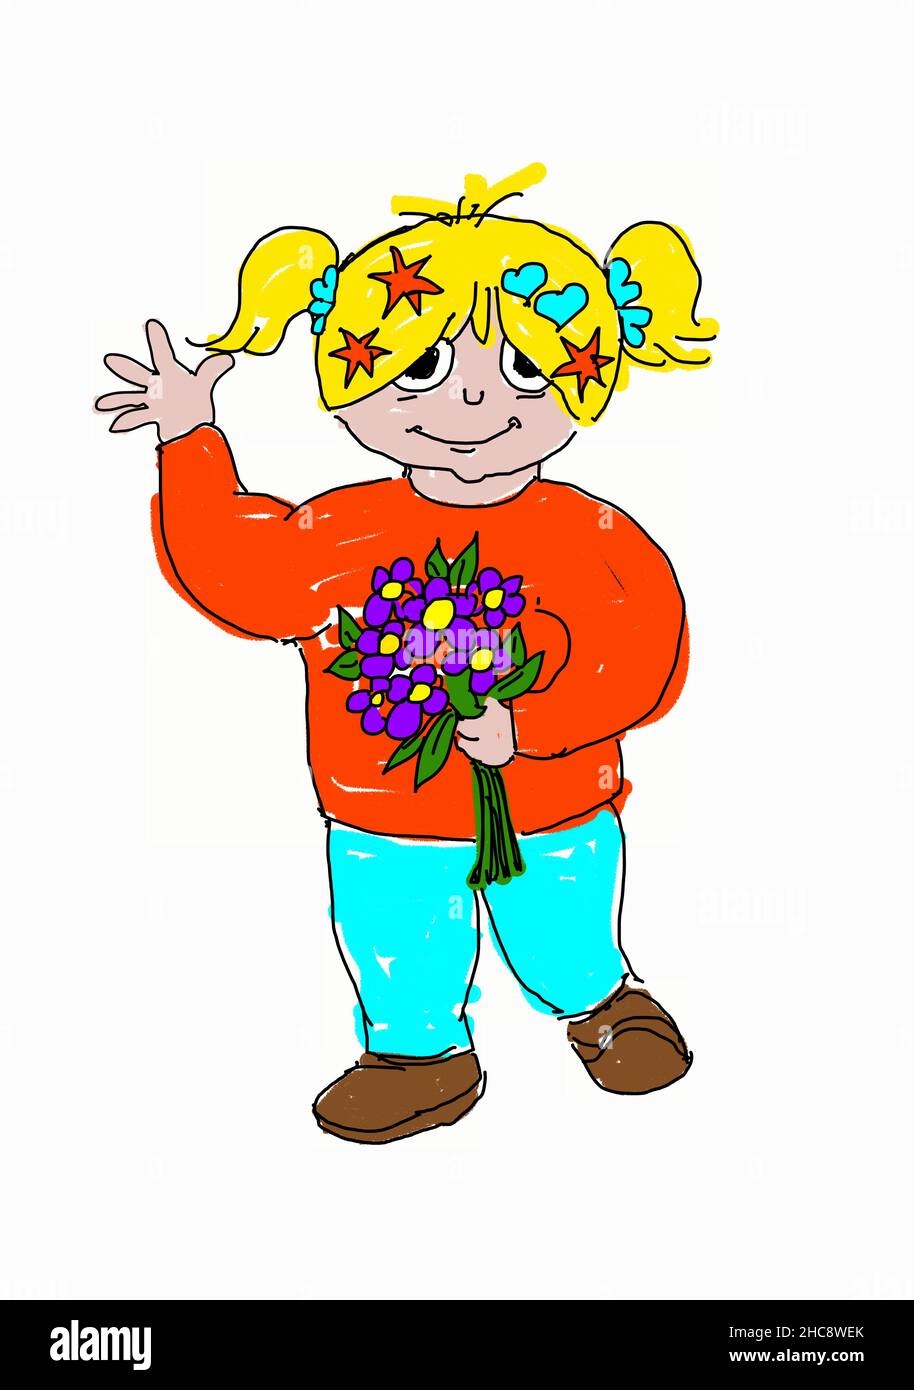 Agitare ragazza carina con un bouquet di fiori. Ha capelli biondi, un maglione rosso-arancio e pantaloni blu chiaro. I fiori sono viola. Illustrazione Vettoriale